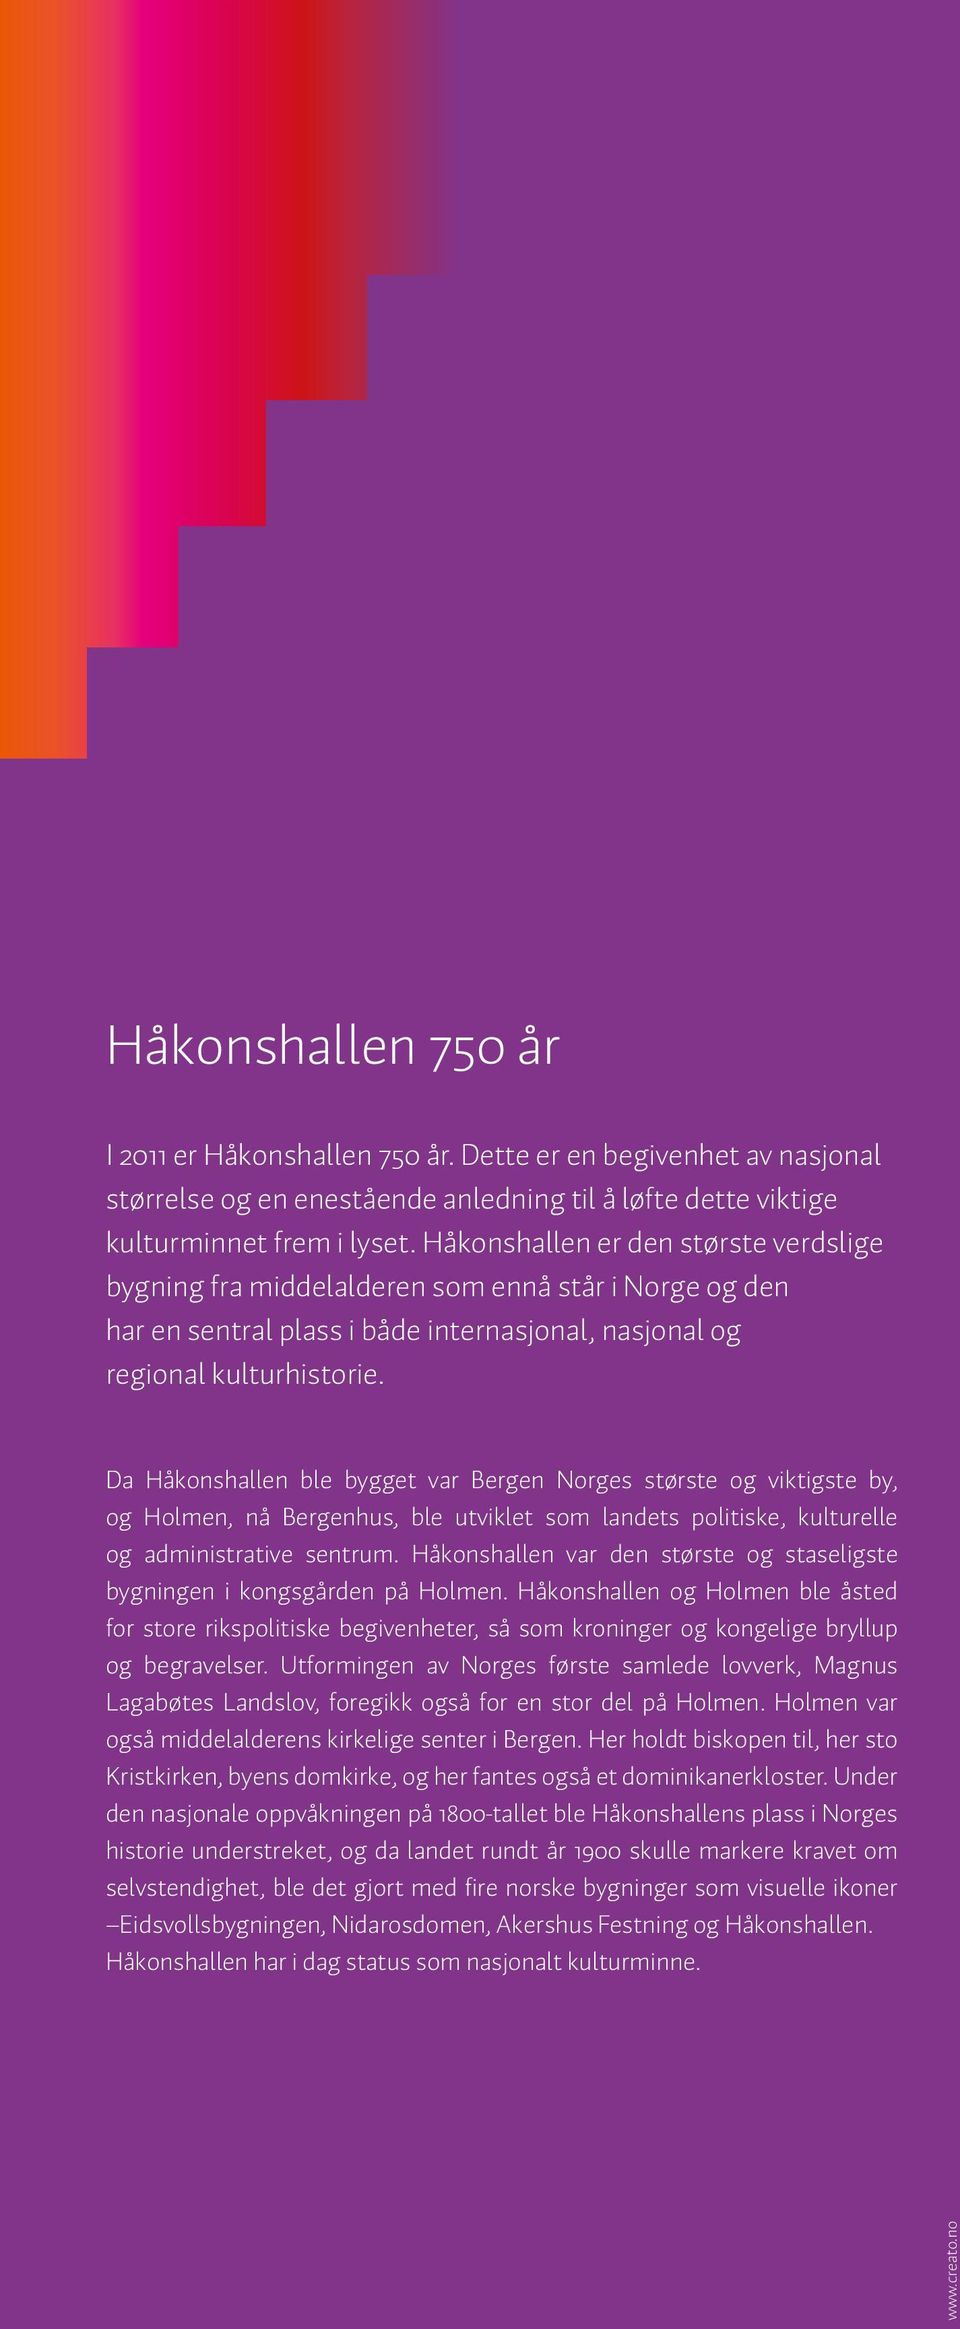 Da Håkonshallen ble bygget var Bergen Norges største og viktigste by, og Holmen, nå Bergenhus, ble utviklet som landets politiske, kulturelle og administrative sentrum.